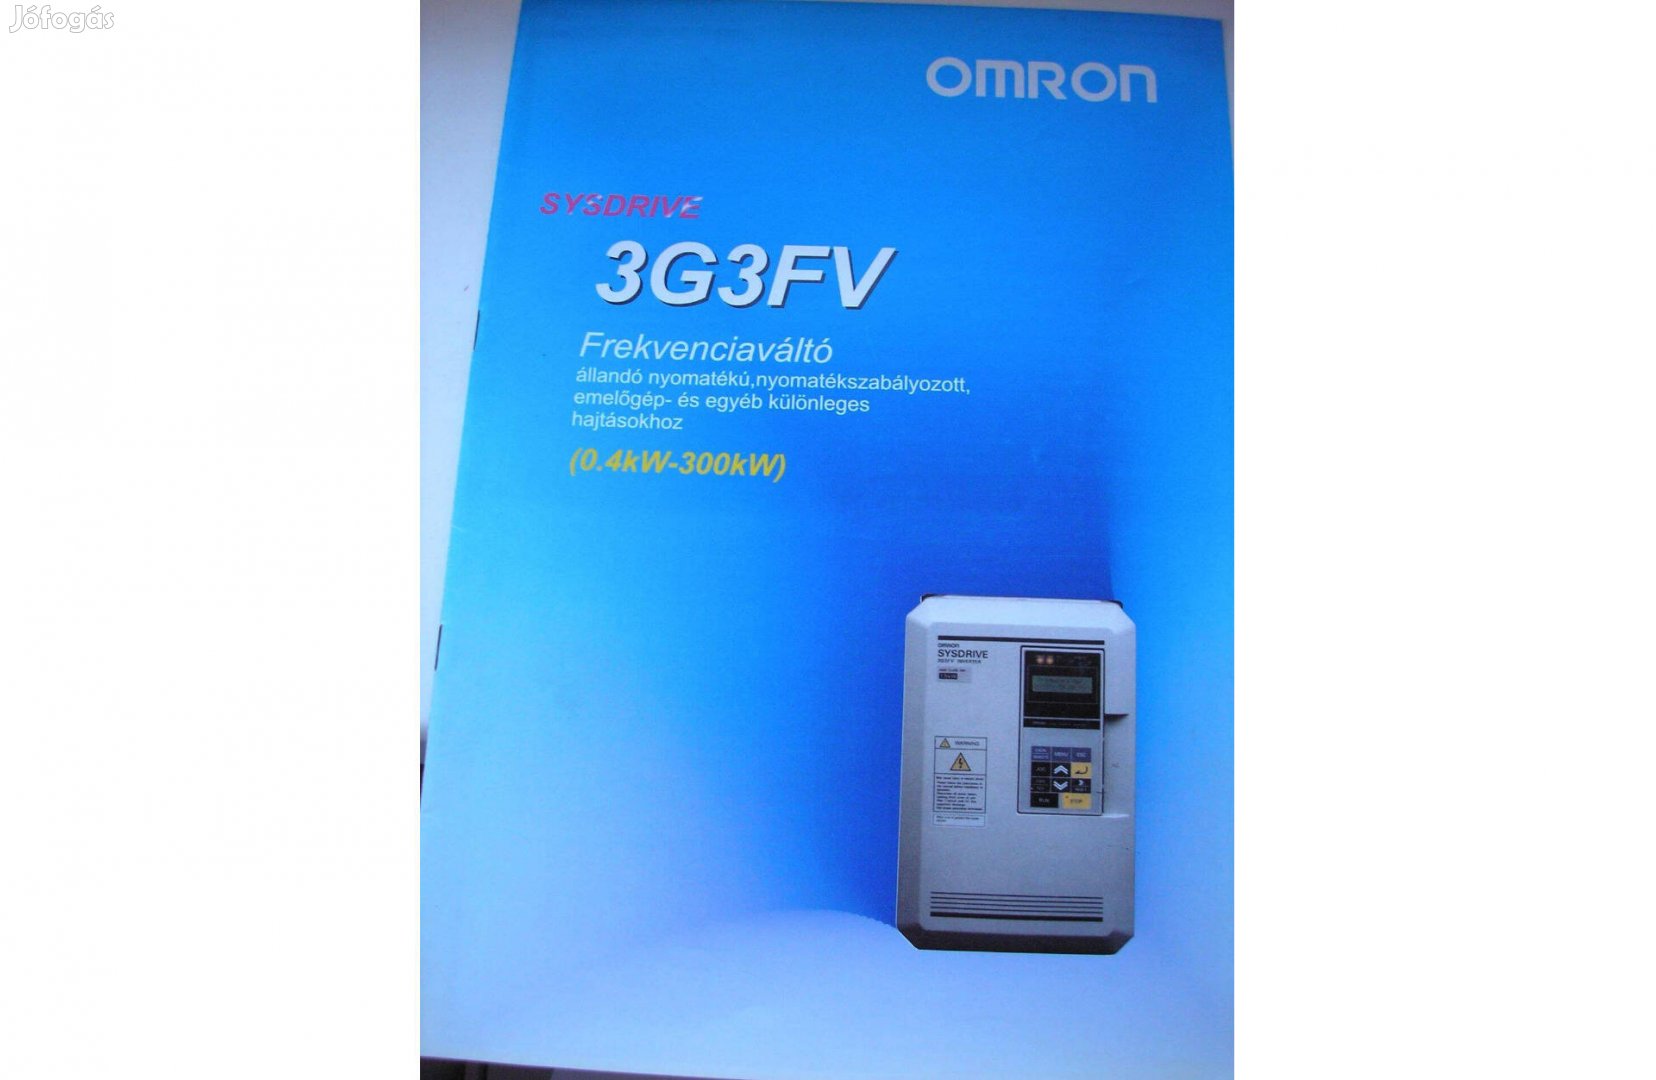 Omron 3G3FV frekvenciaváltó bekötési rajz